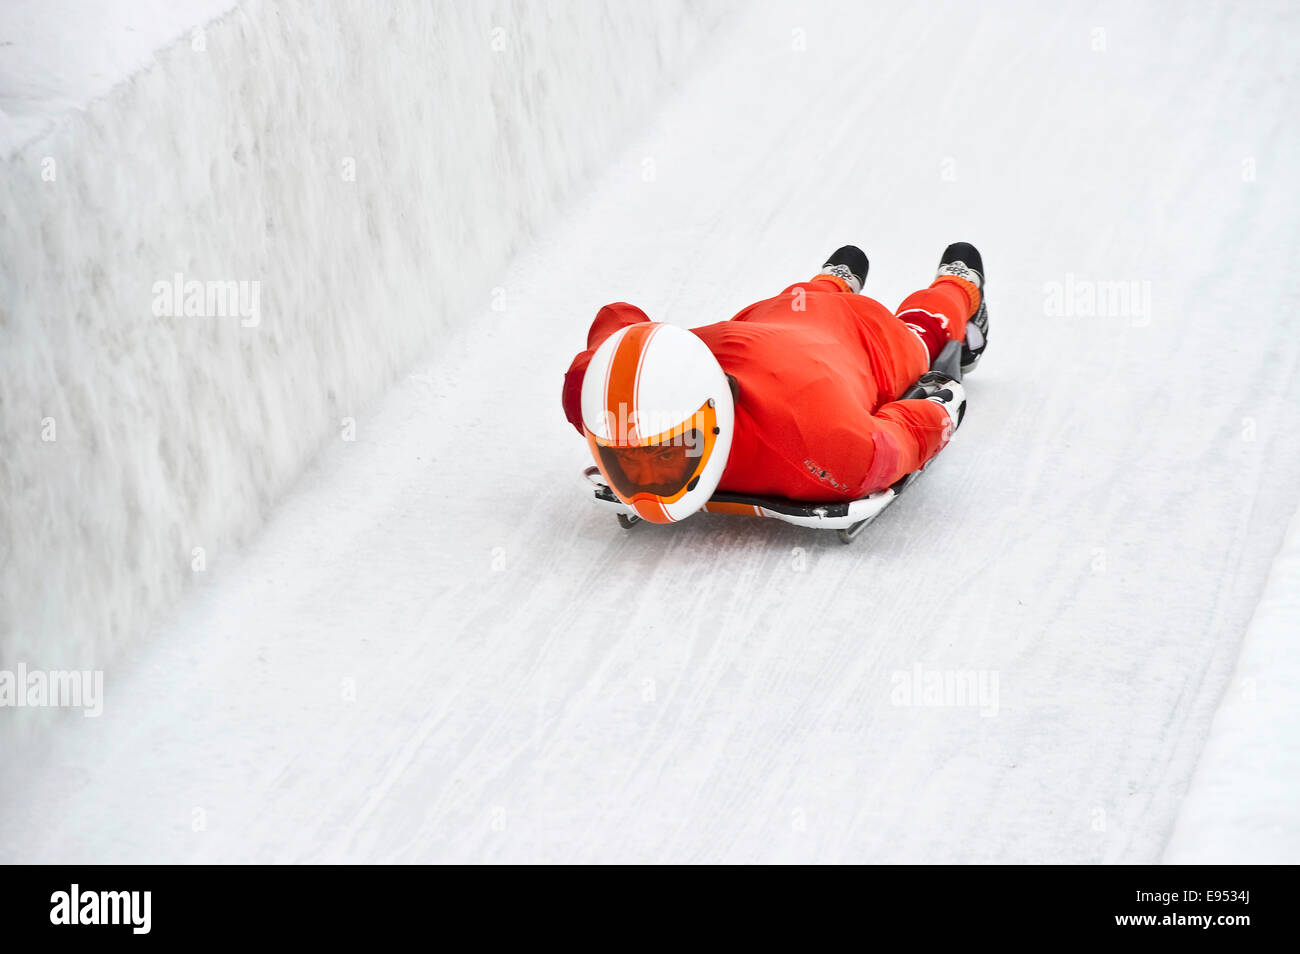 Jinete esqueleto en la pista de hielo, St Moritz, Engadin, Grisones, Suiza Foto de stock